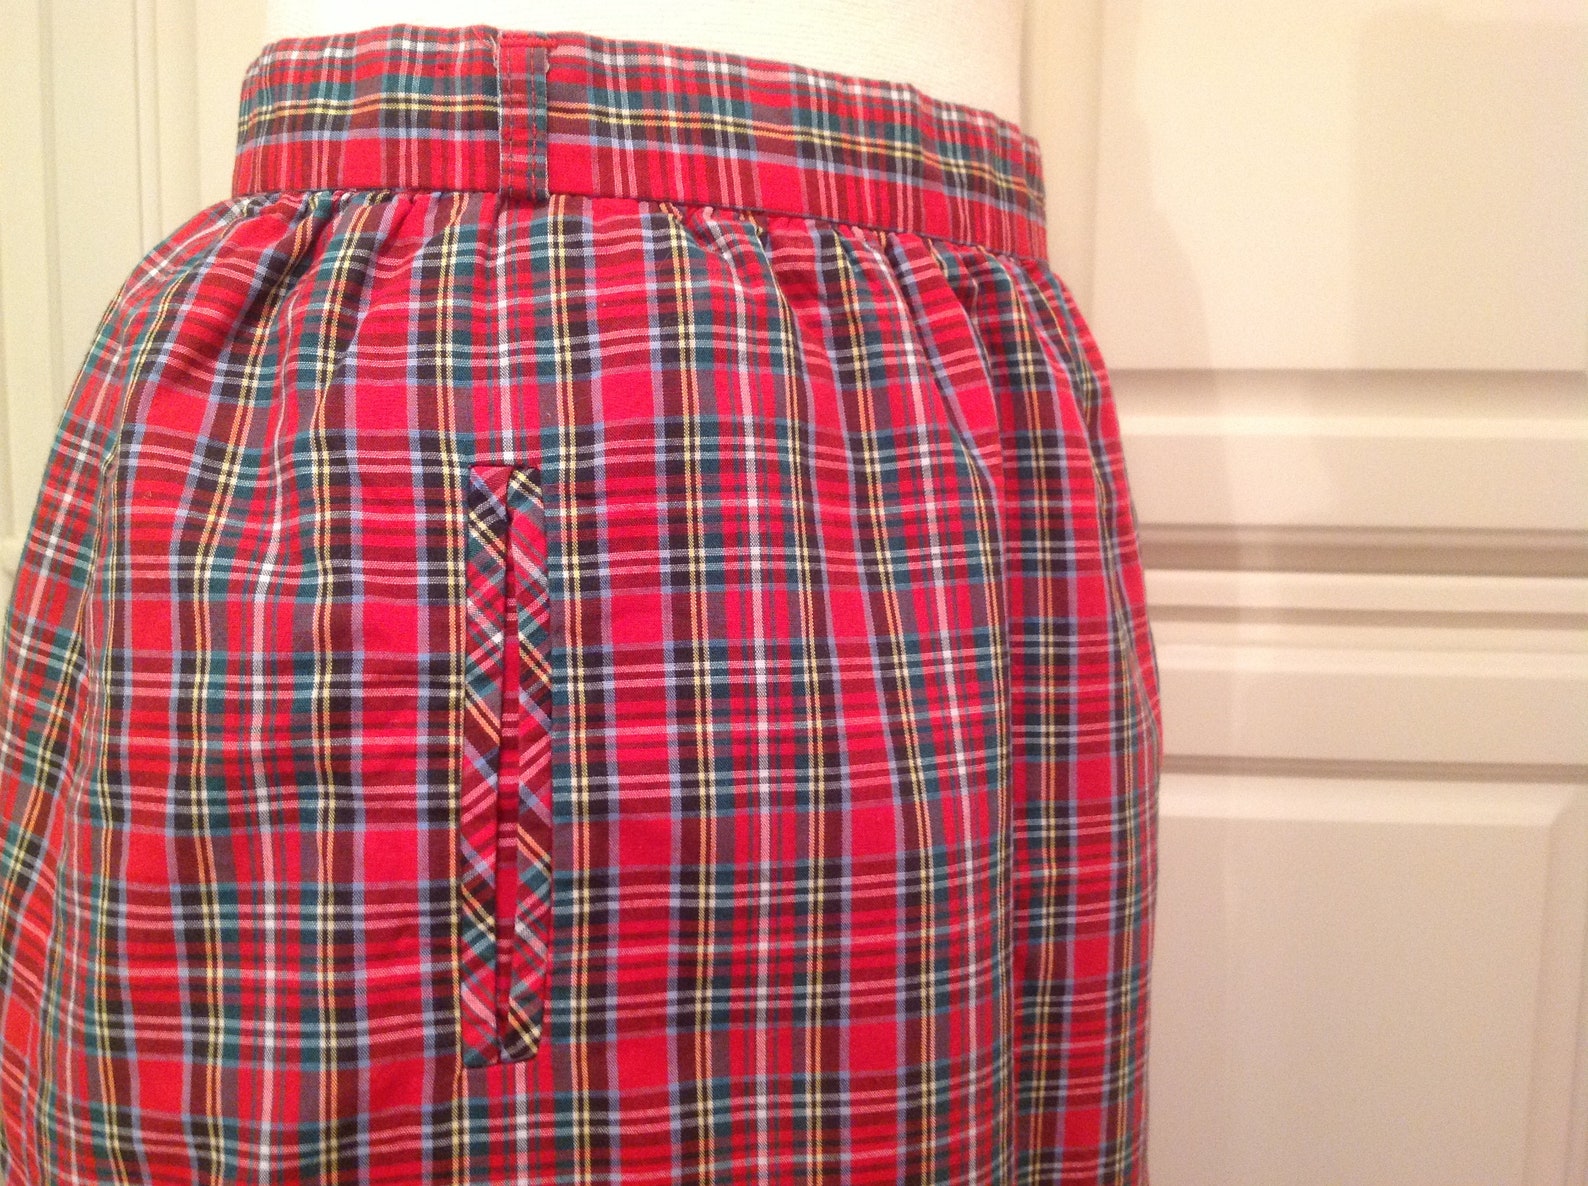 Red Plaid Skirt Tartan Plaid / FREE SHIPPNG / Cotton Skirt - Etsy